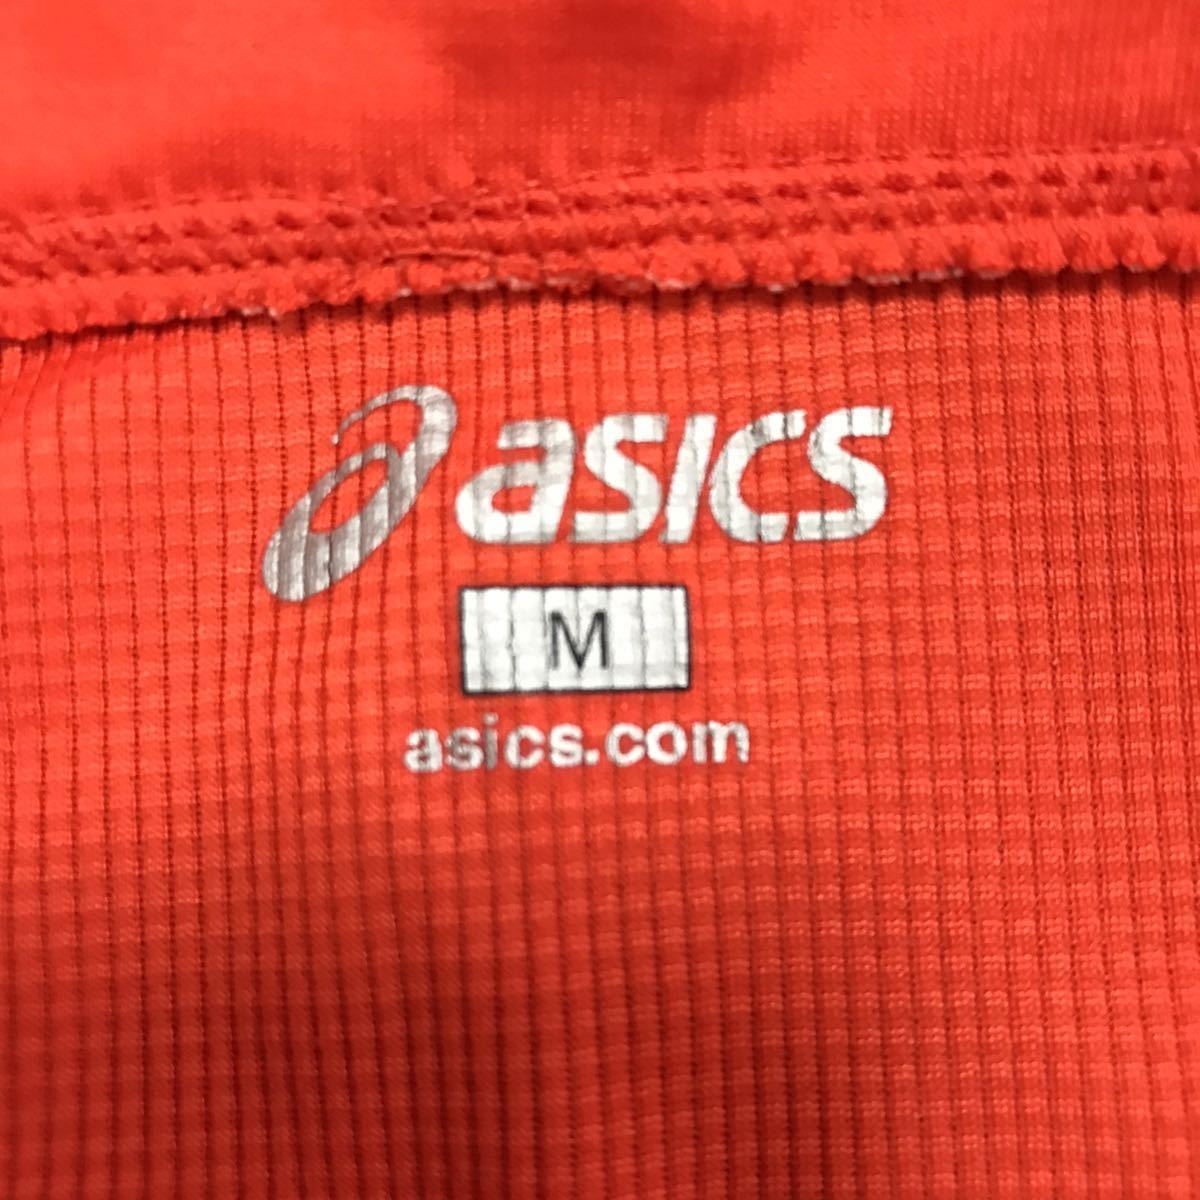 asics アシックス 半袖 ハーフジップ Tシャツ メンズ M オレンジ ポロシャツ カジュアル スポーツ トレーニング ウェア シンプル ロゴ